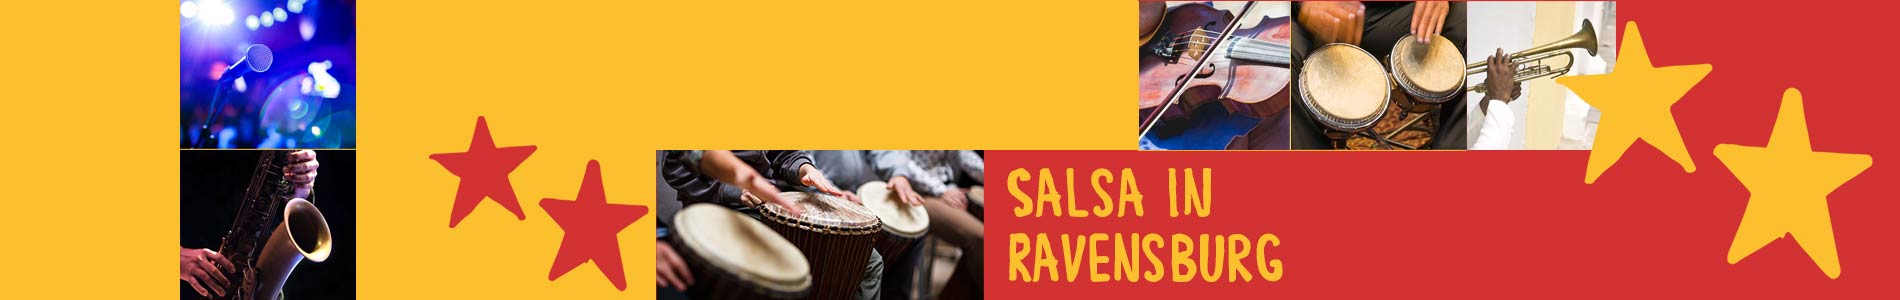 Salsa in Ravensburg – Salsa lernen und tanzen, Tanzkurse, Partys, Veranstaltungen